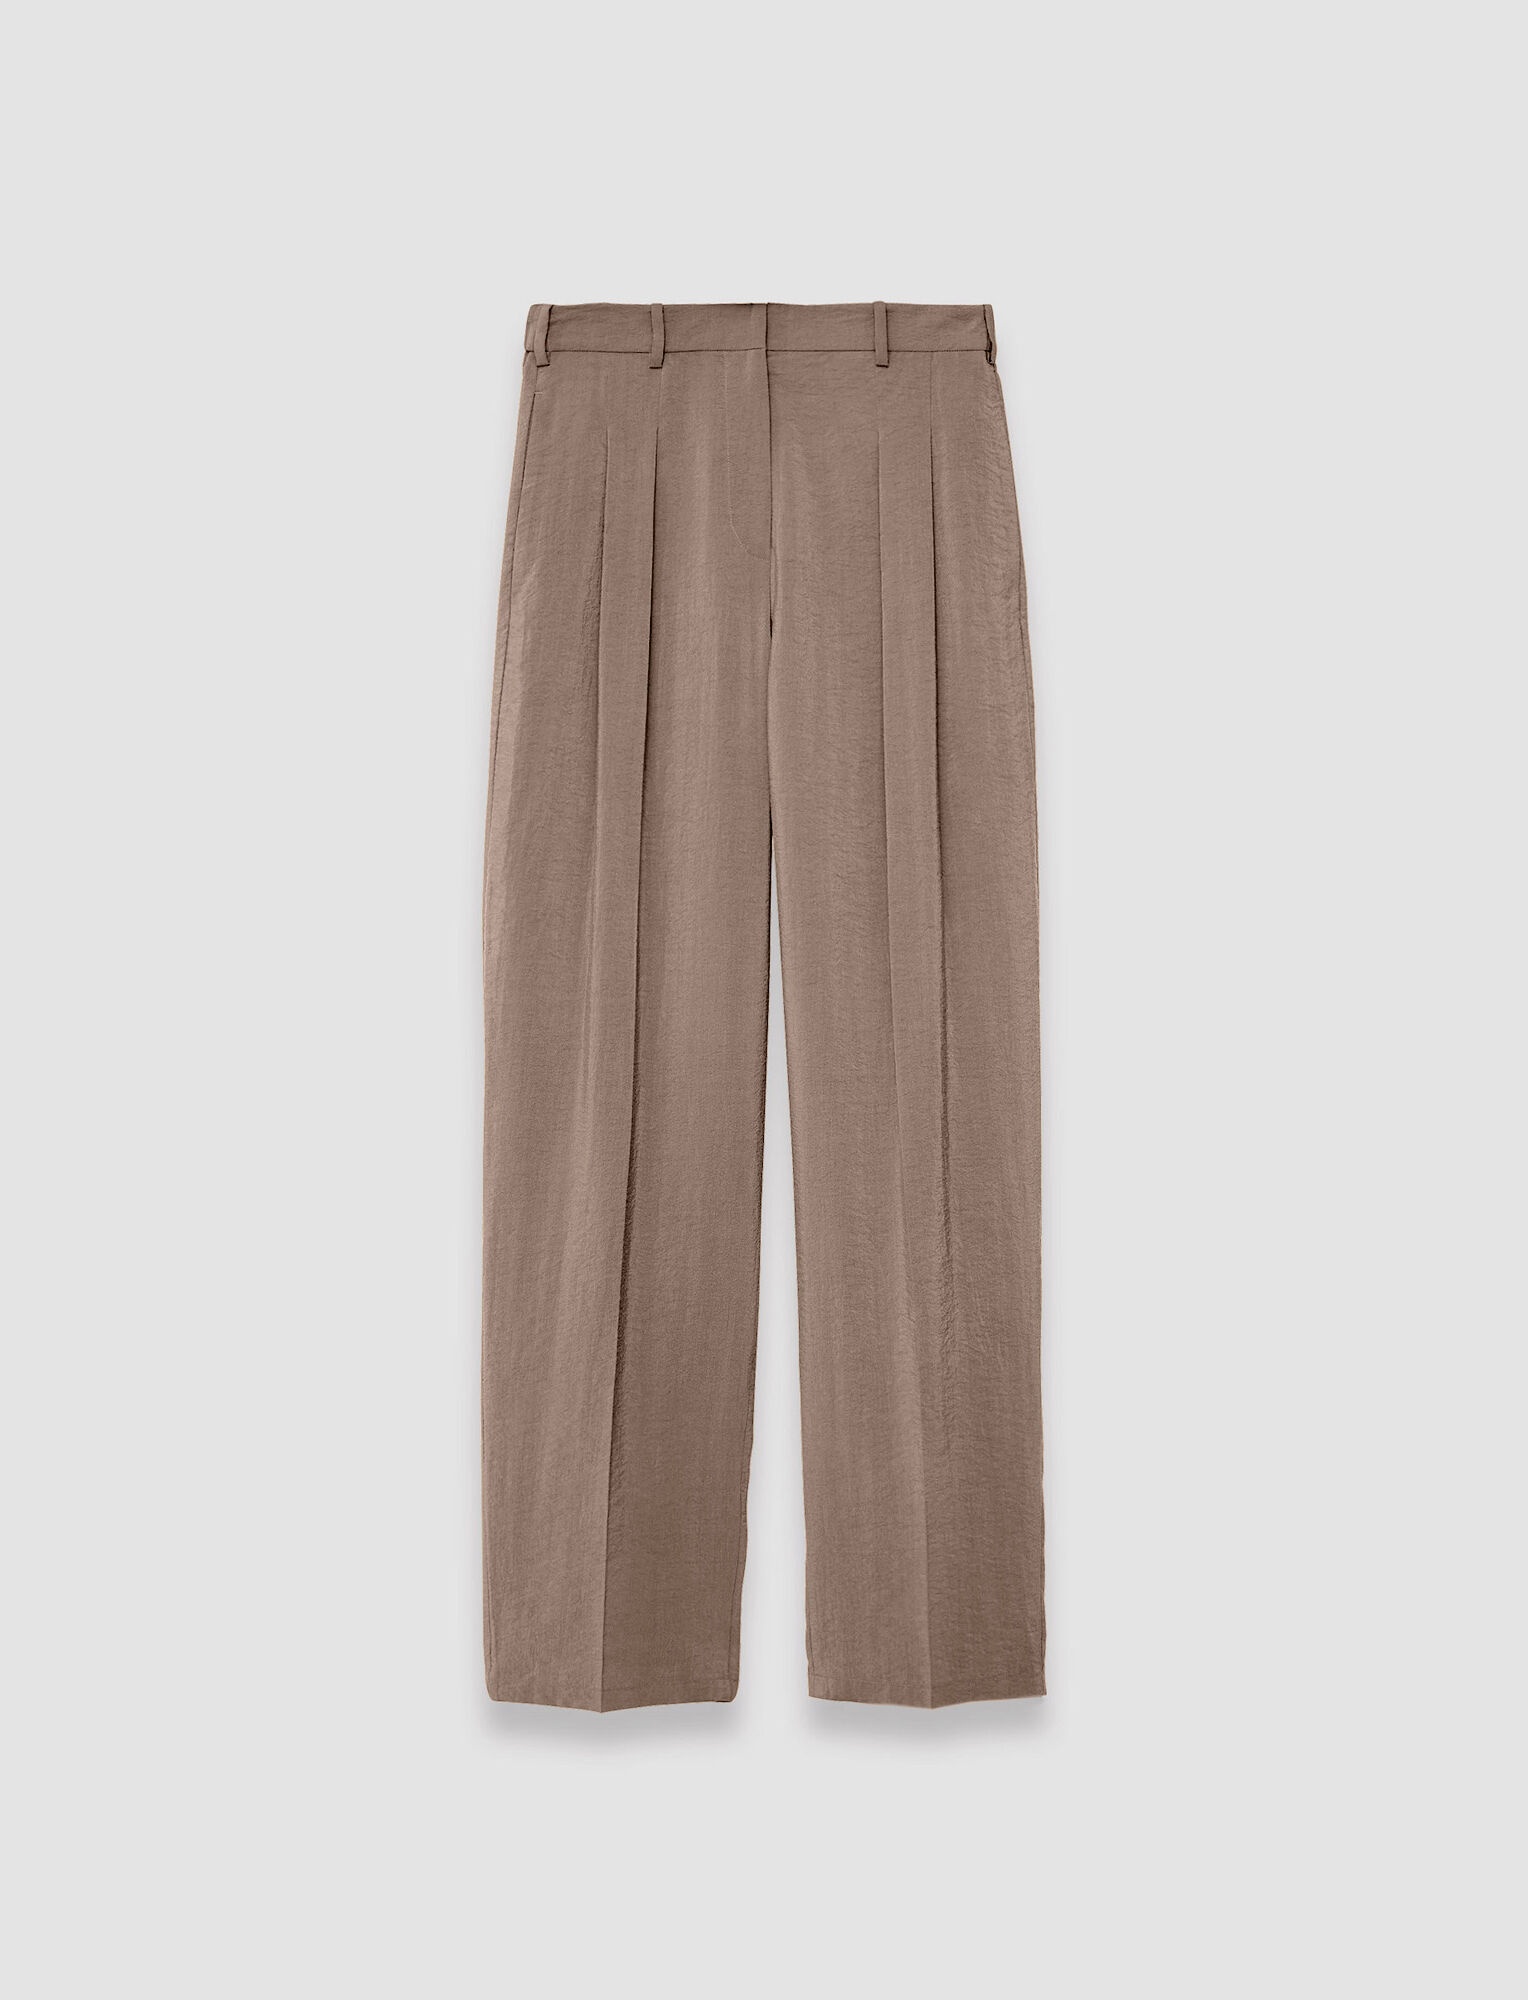 Textured Twill Tarn Trousers - 1